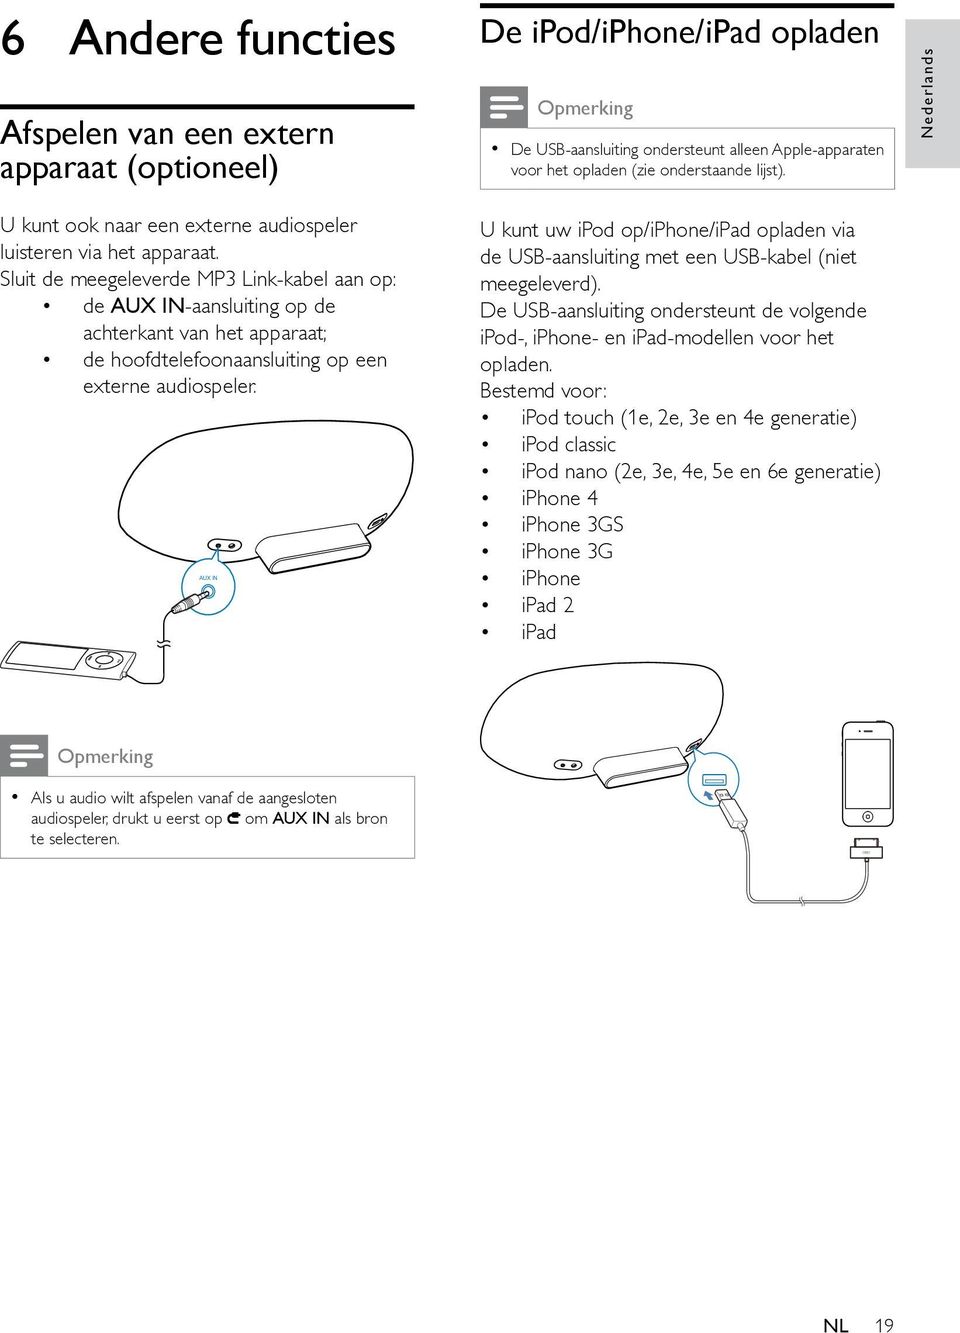 Sluit de meegeleverde MP3 Link-kabel aan op: de AUX IN-aansluiting op de achterkant van het apparaat; de hoofdtelefoonaansluiting op een externe audiospeler.